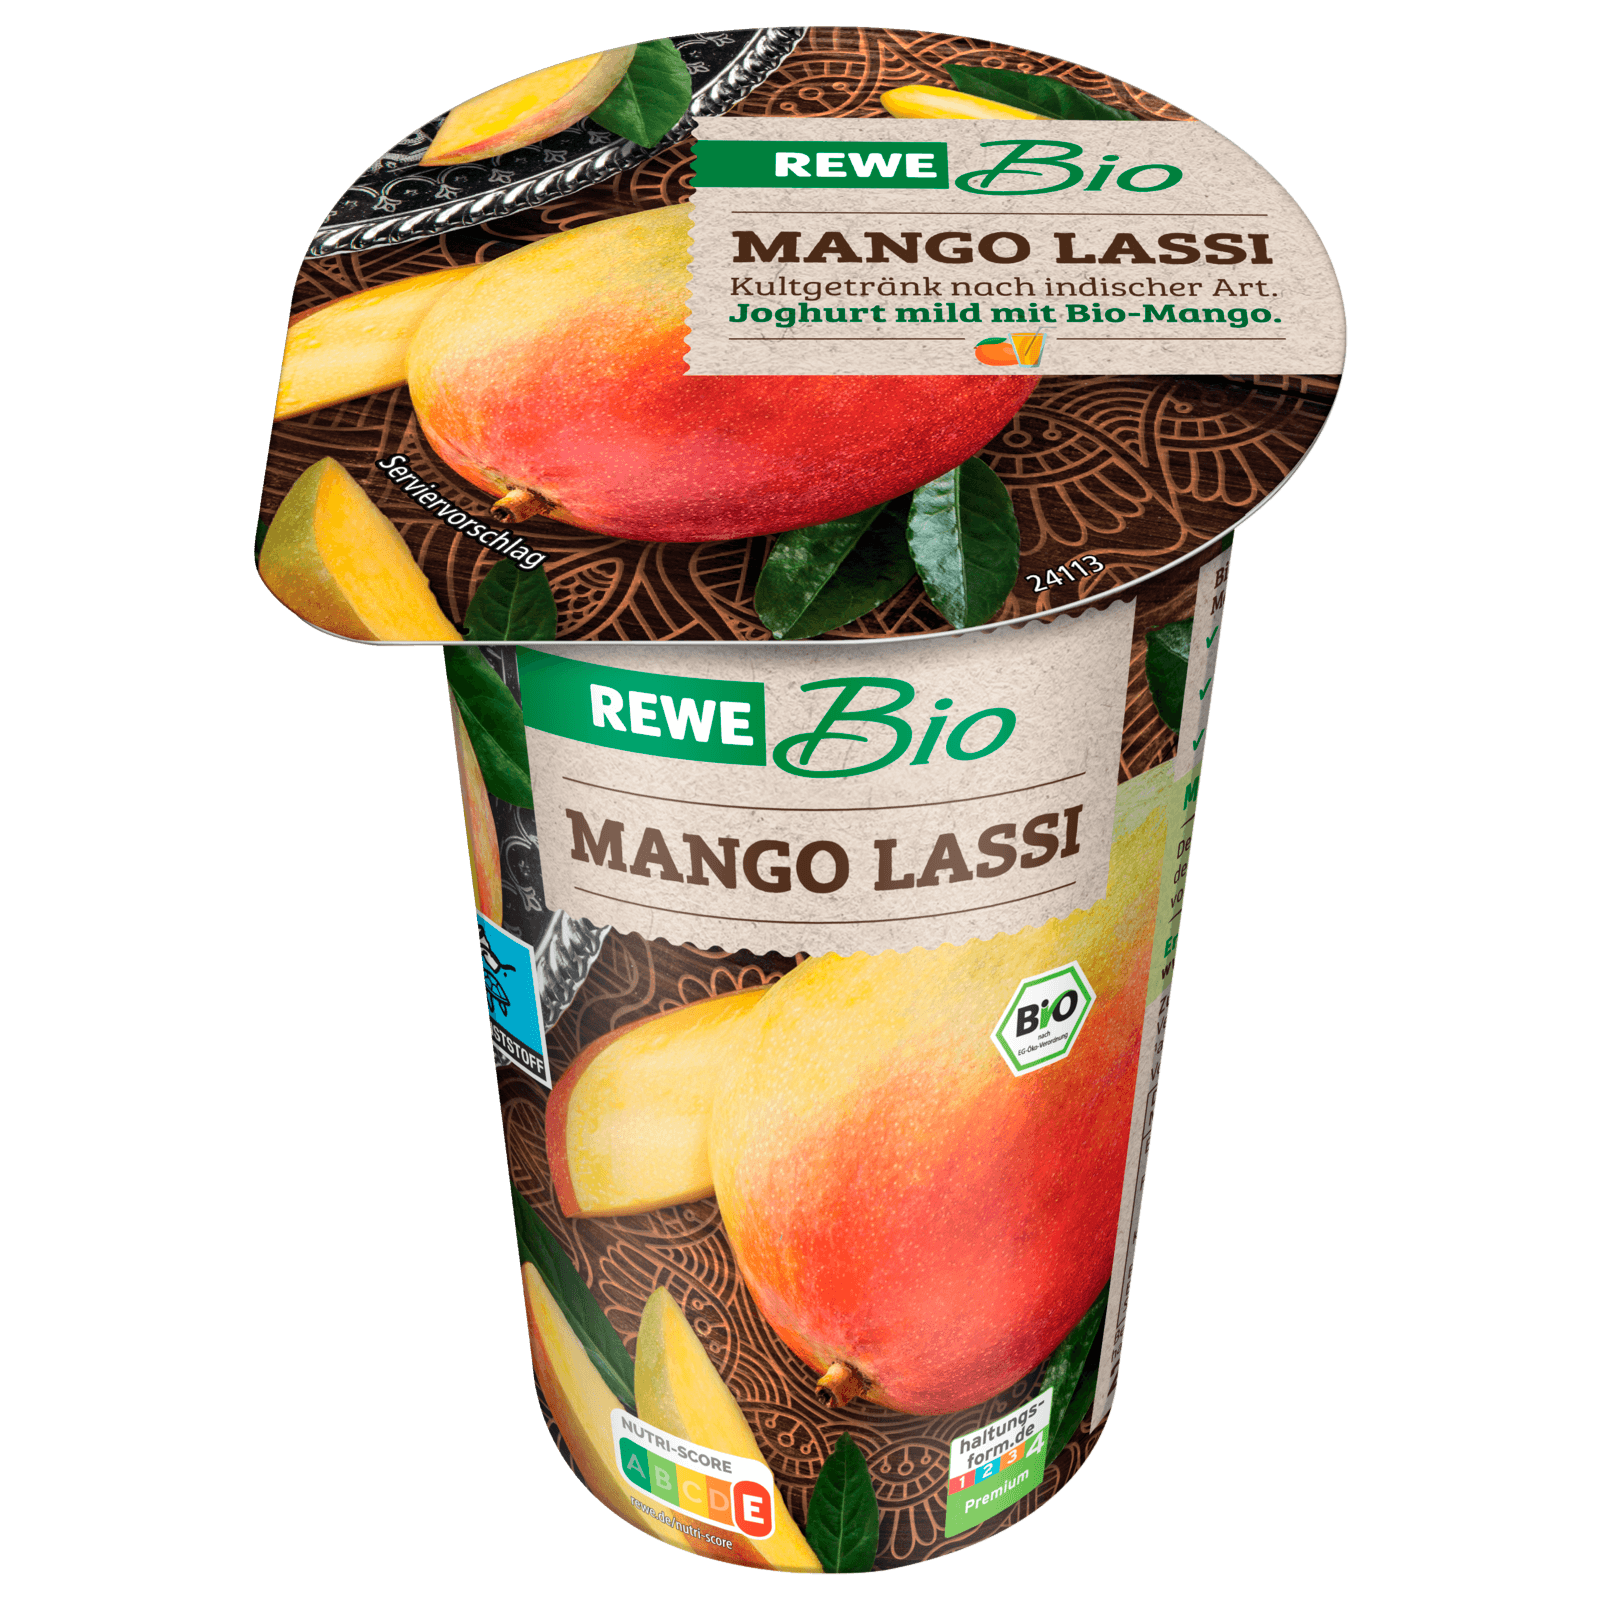 REWE Bio Mango Lassi 250g